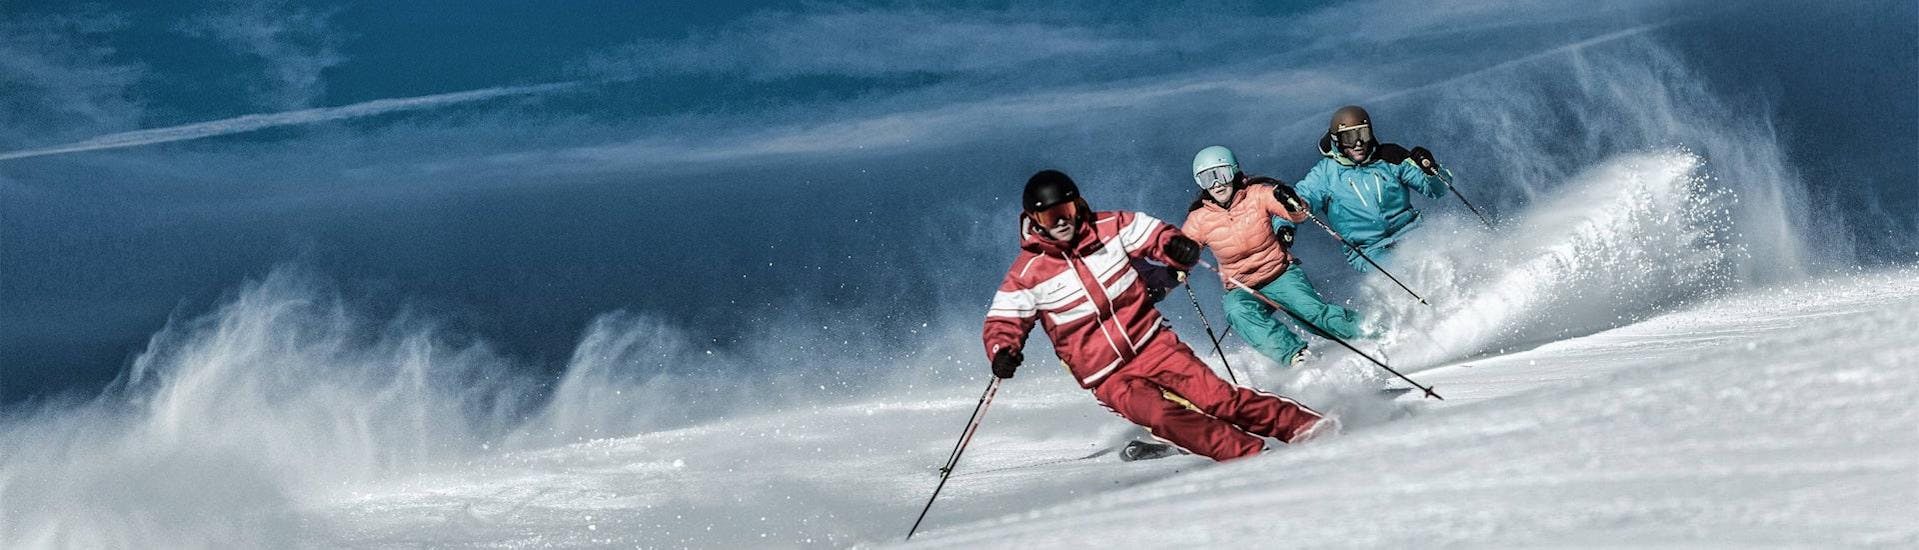 Cours de ski Adultes - Avancé.